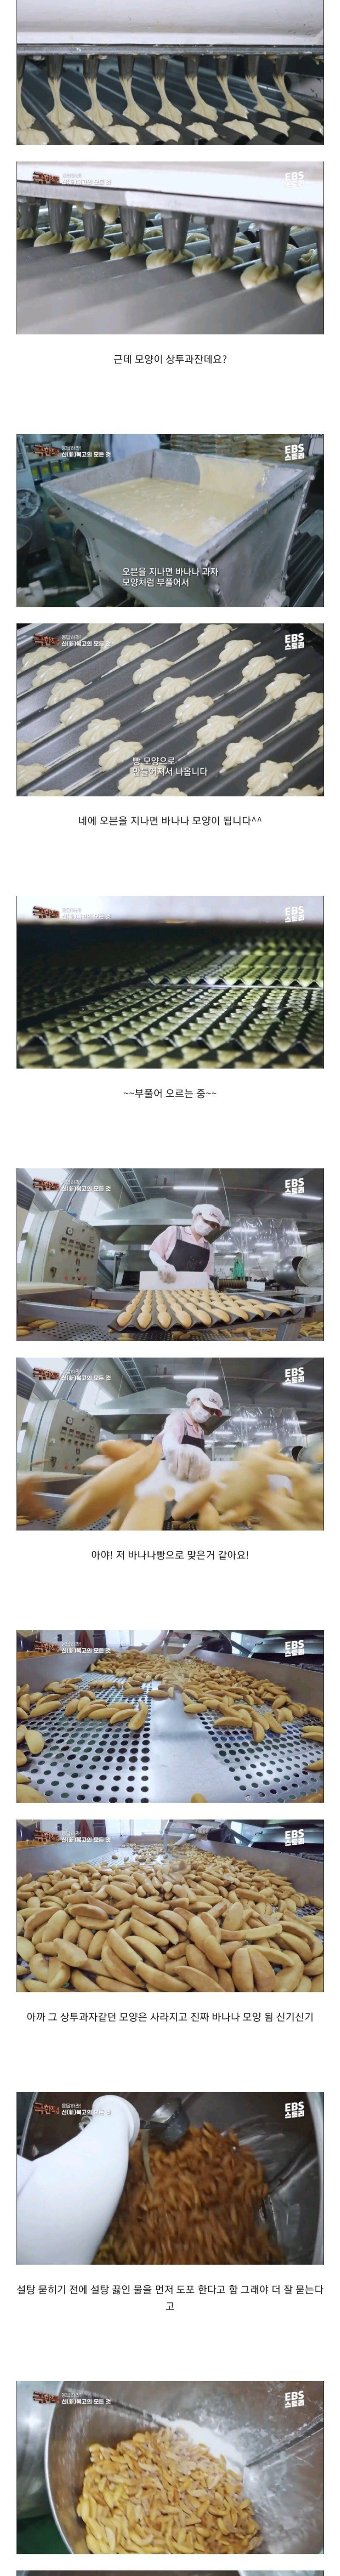 u2.jpg 극한직업) 바나나빵이 만들어지는 과정.jpg